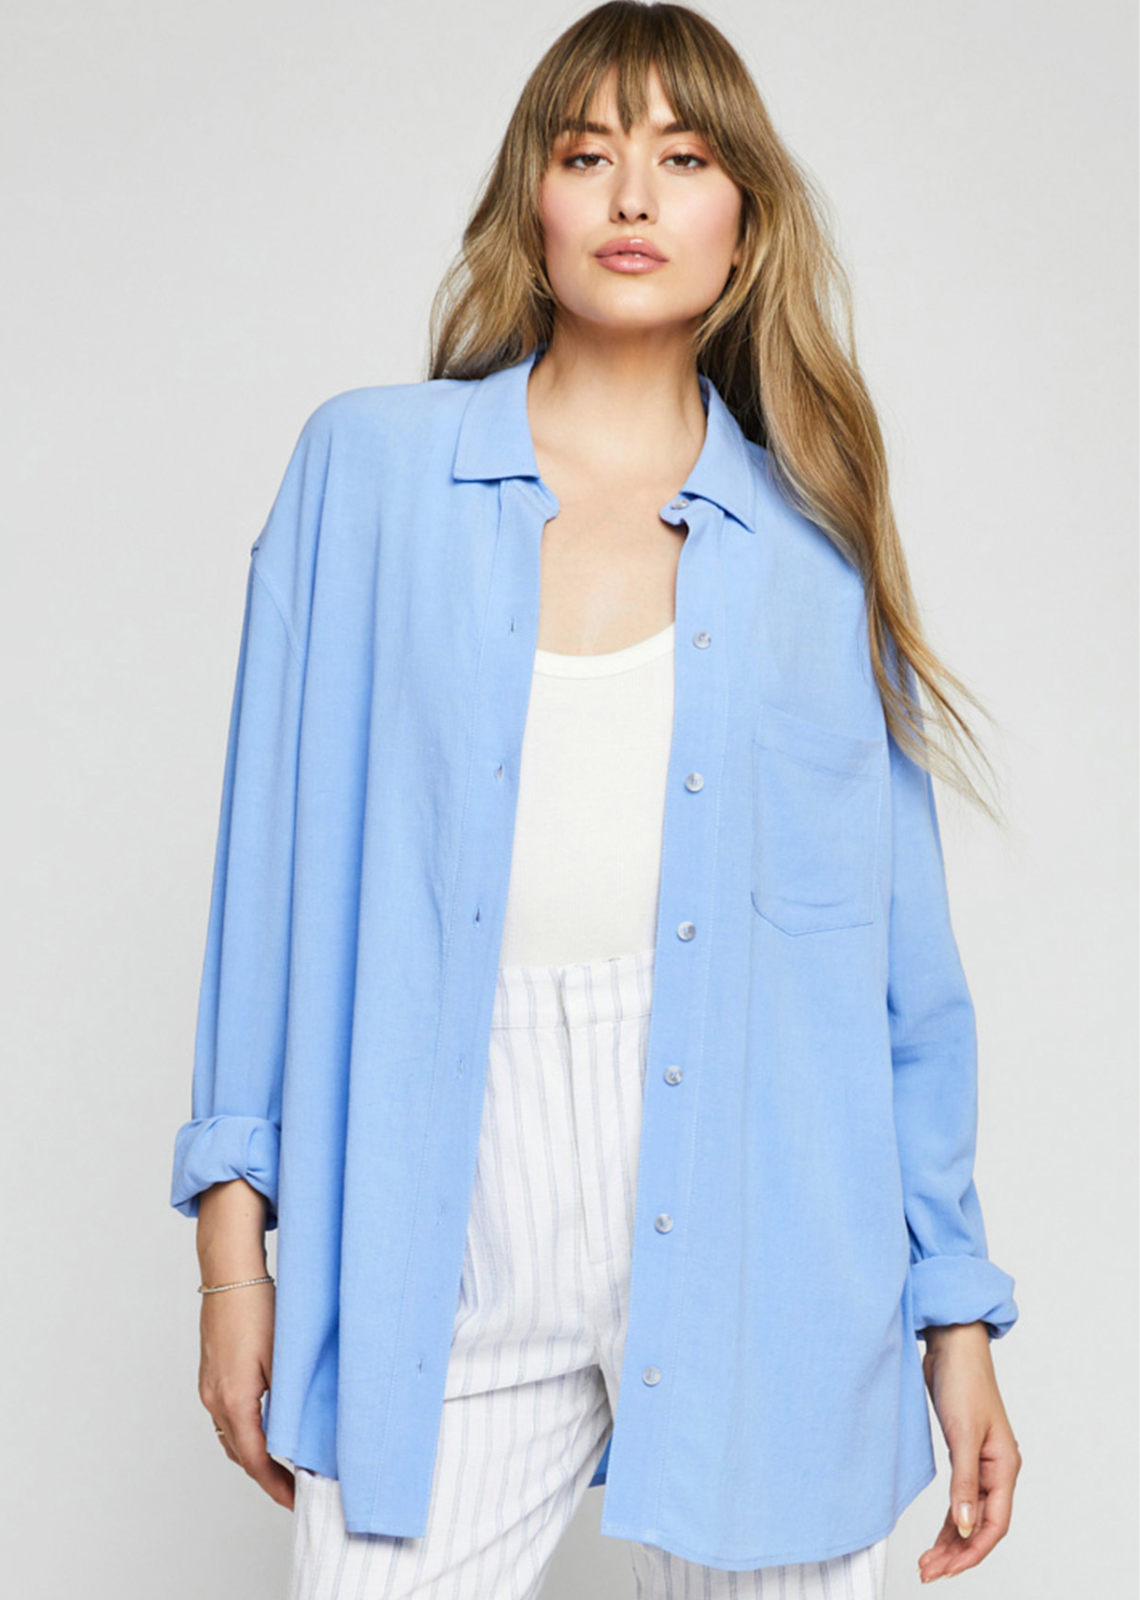 Flax 100% Linen Womens Blue Textured Button Down Collared Short Sleeve  Shirt S ?